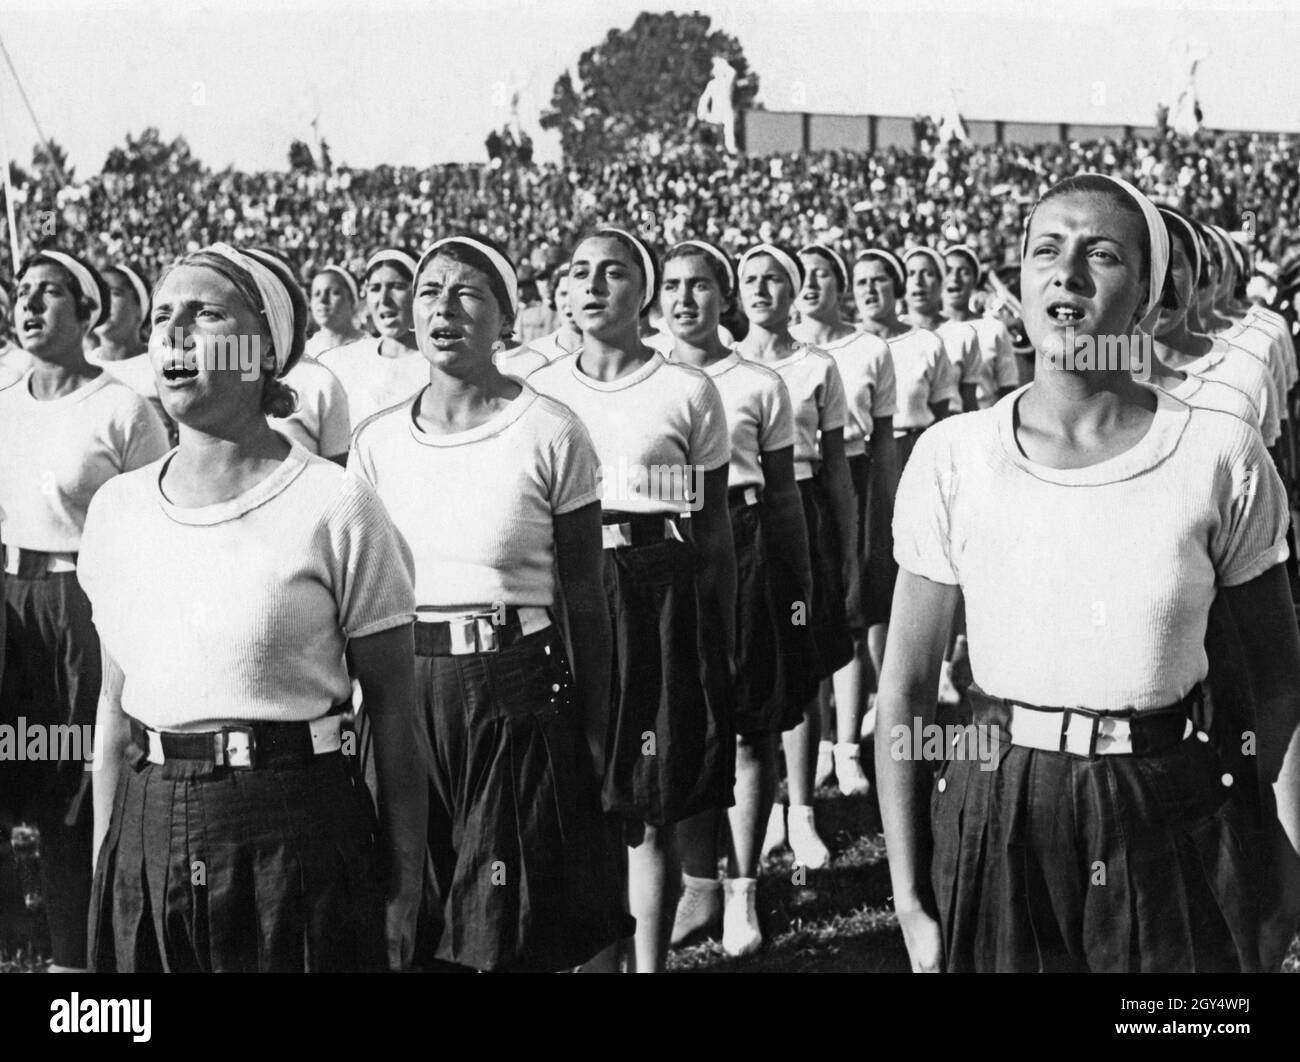 Questa fotografia del 1933 mostra le giovani donne dell'organizzazione giovanile fascista Opera Nazionale Balilla cantando prima dell'inizio di un evento al Marble Stadium di Roma. Sullo sfondo si possono vedere delle bancarelle affollate. [traduzione automatizzata] Foto Stock